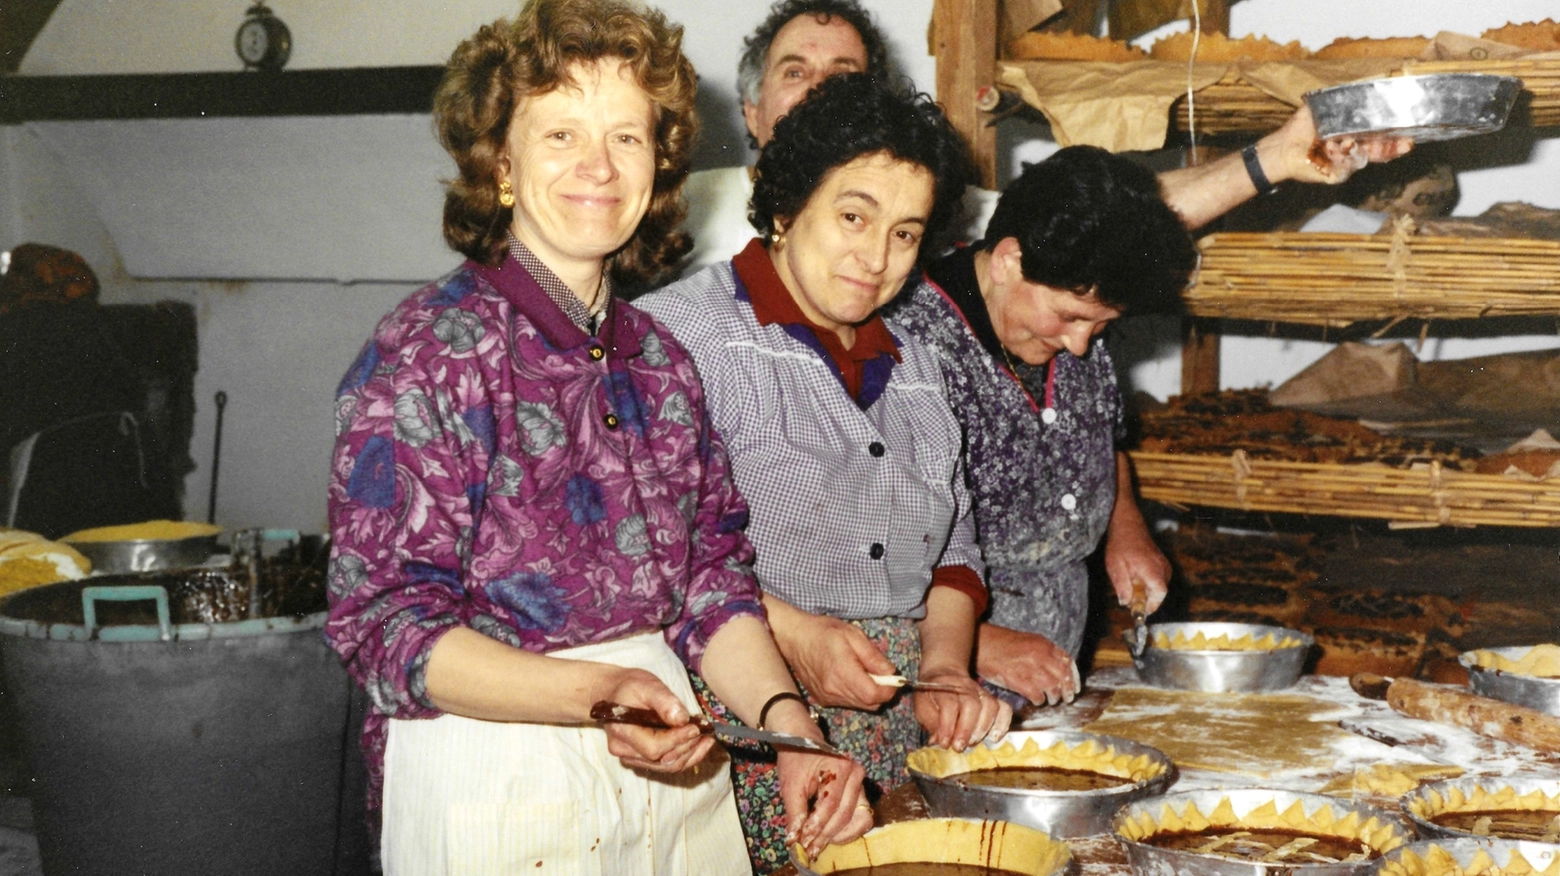 L'iniziativa culinaria per imparare a fare il dolce tipico di Pontasserchio è prevista per venerdì 26 aprile alle 15.30 e alle 21.30 al Circolo Arci Casa del Popolo.